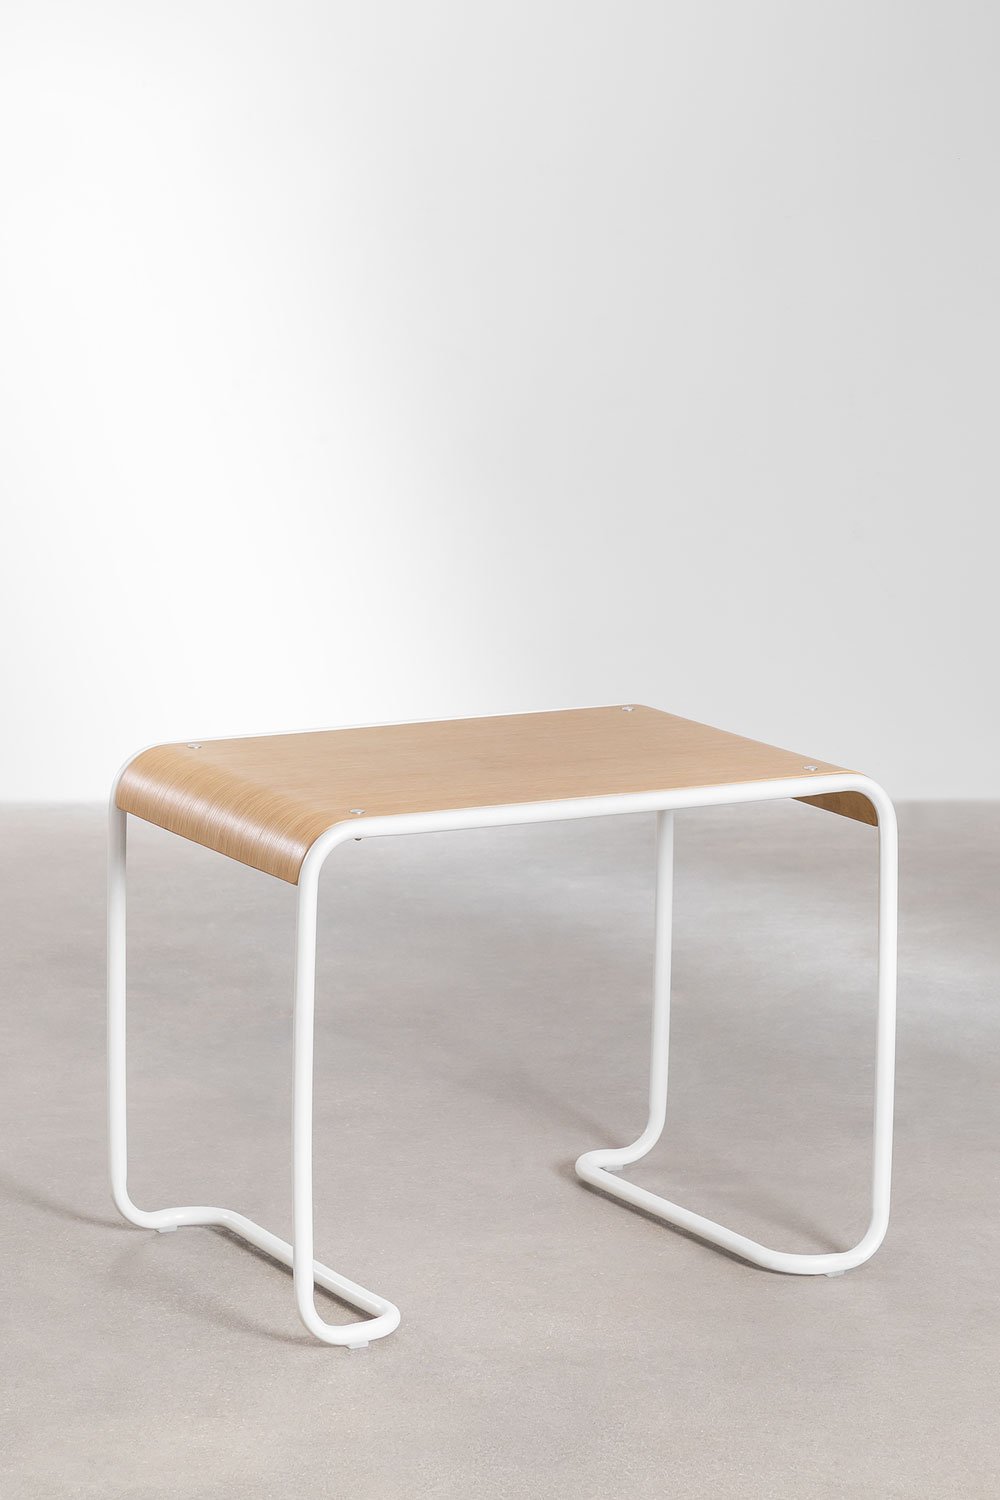 Set tavolo e sedia in legno Blaby Kids - SKLUM